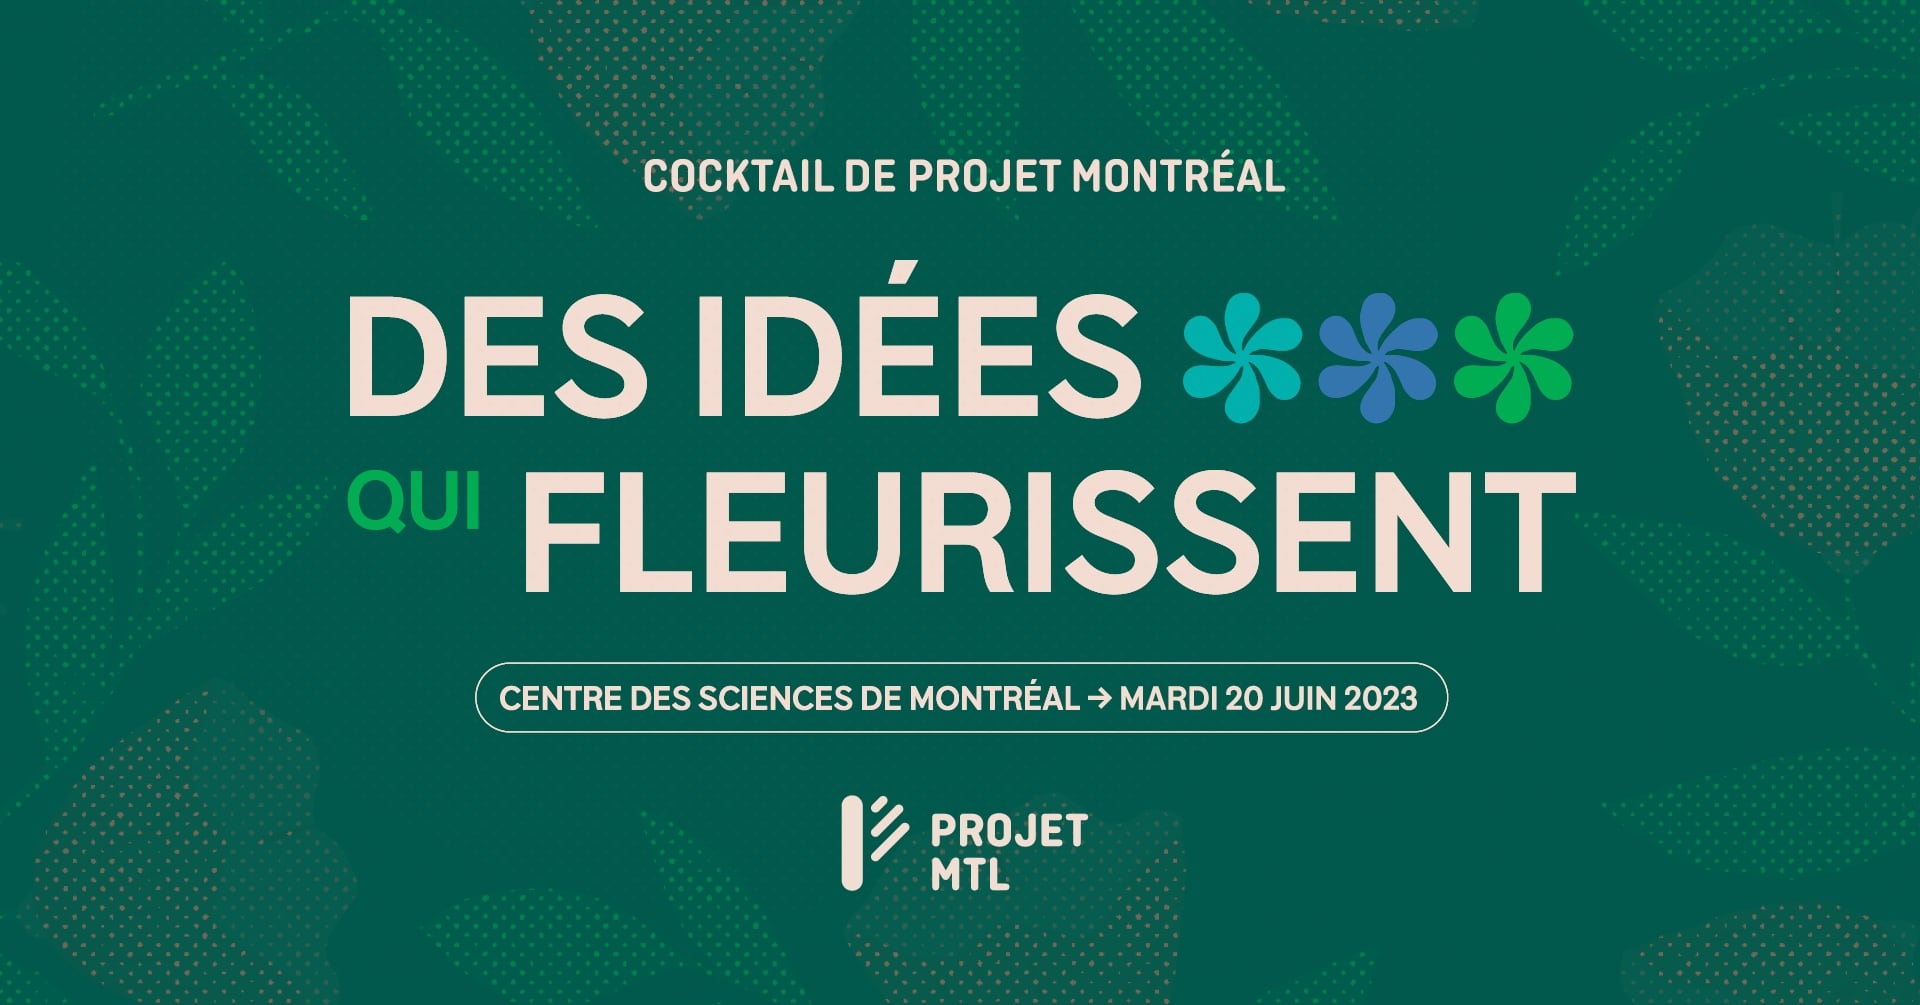 Cocktail de financement de Projet Montréal 2023 - des idées qui fleurissent